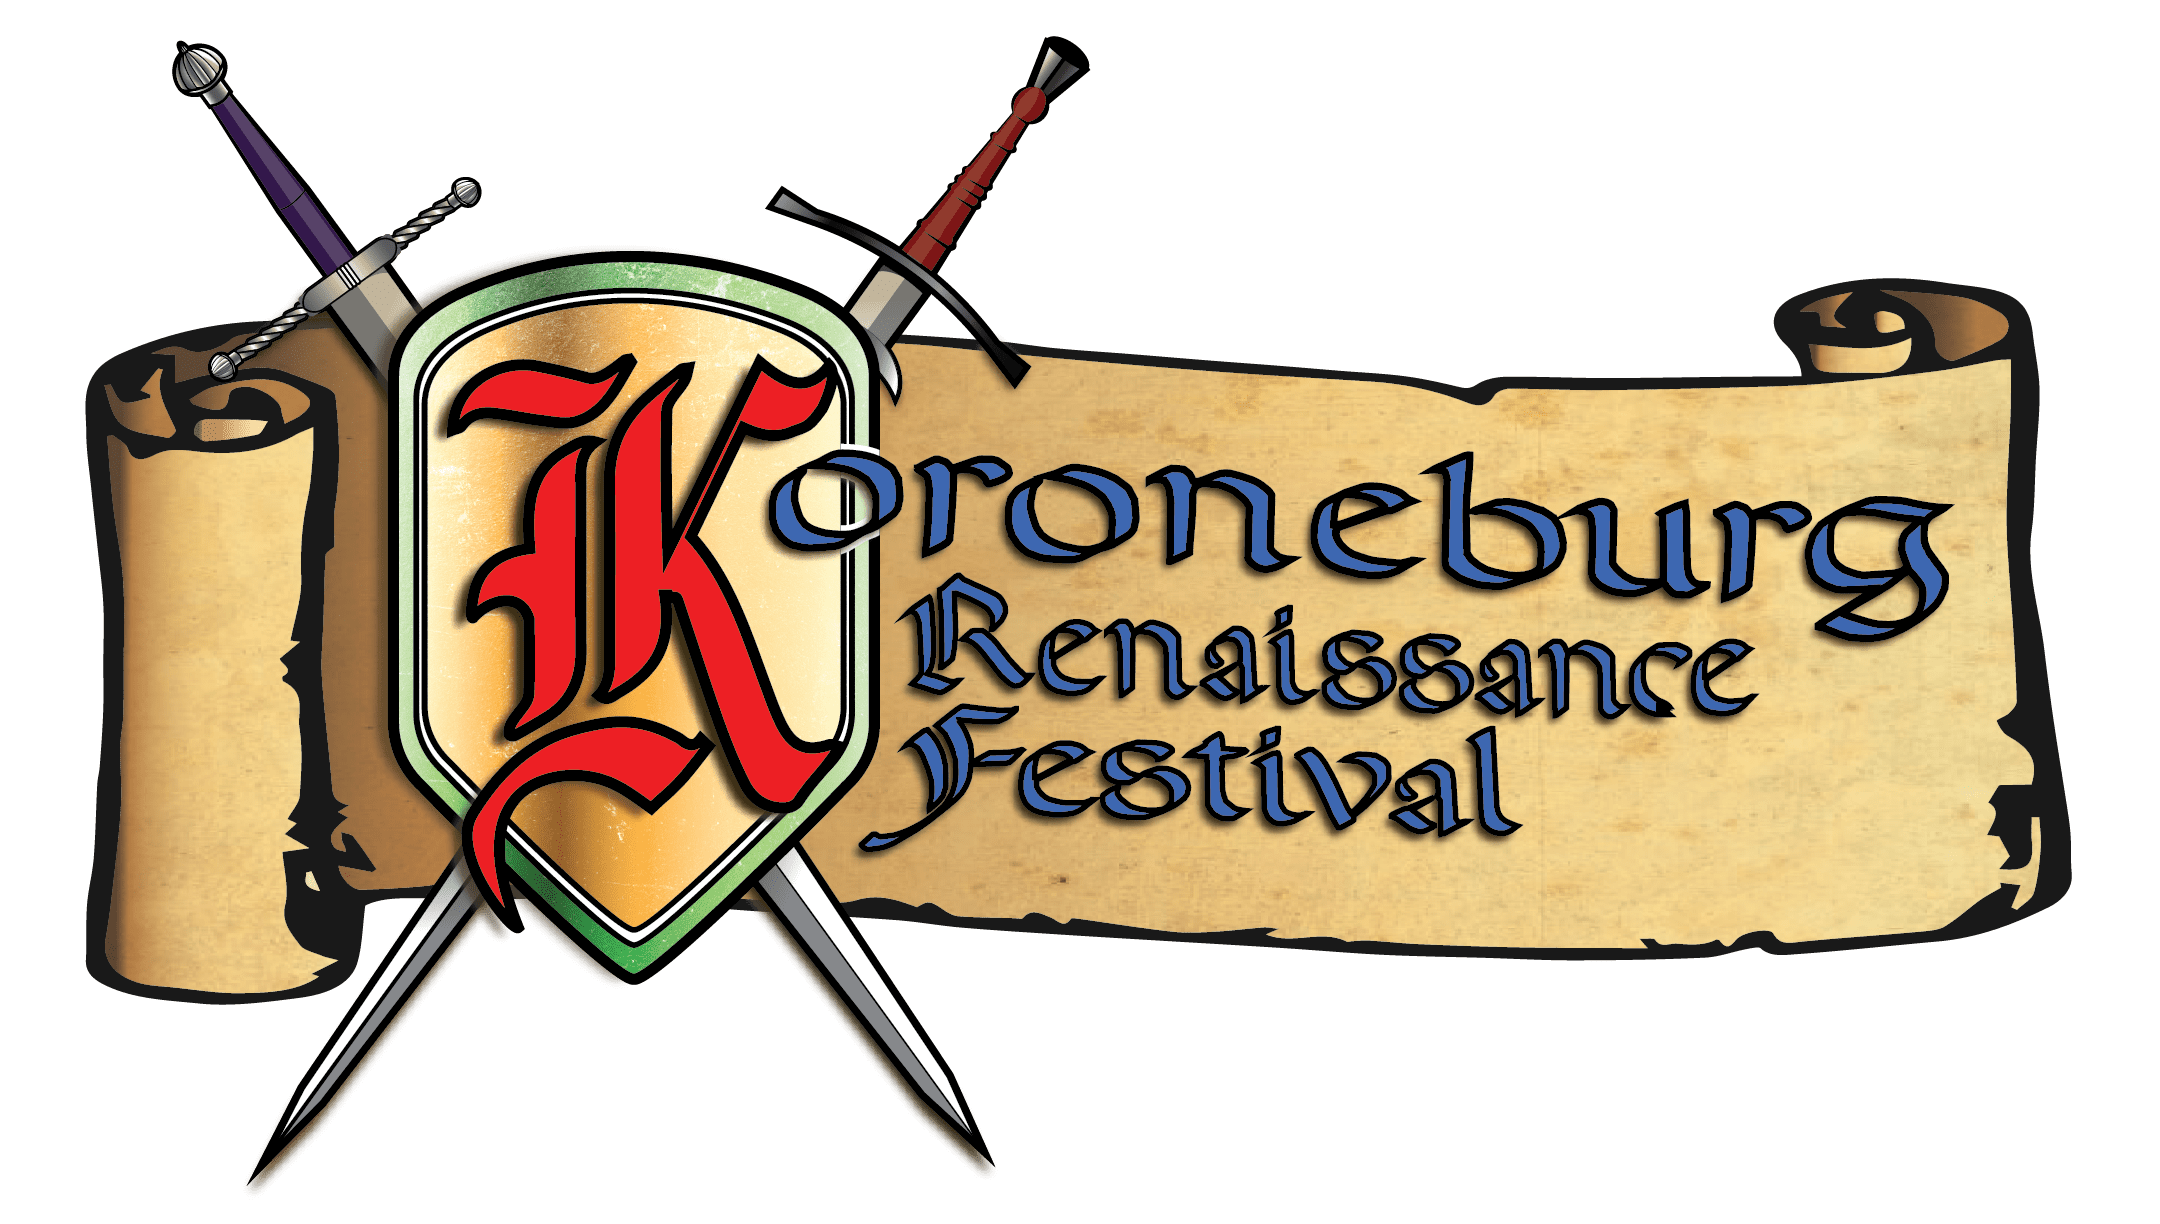 Koroneburg Renaissance Festival Logo